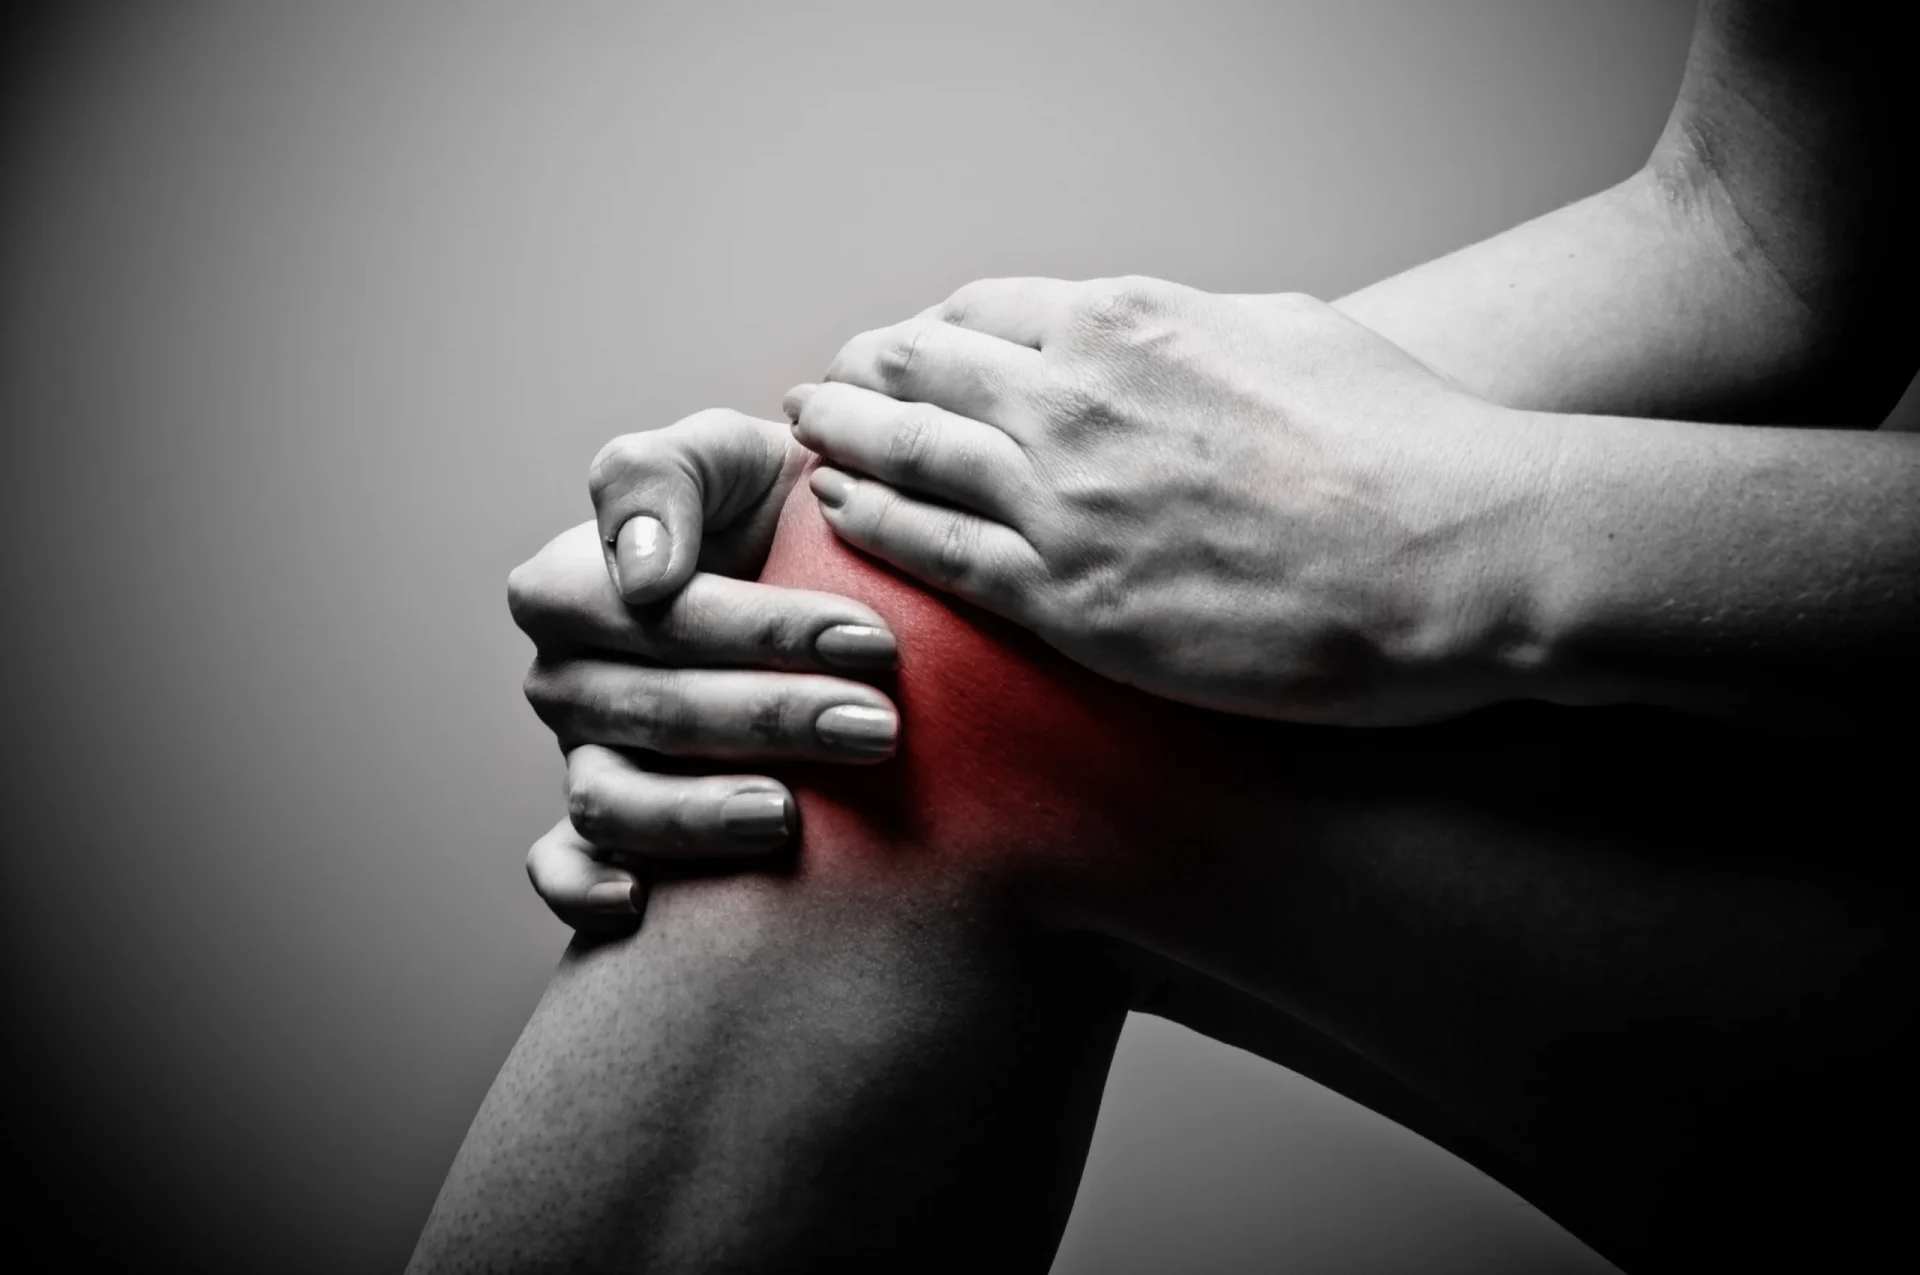 pain when bending knees